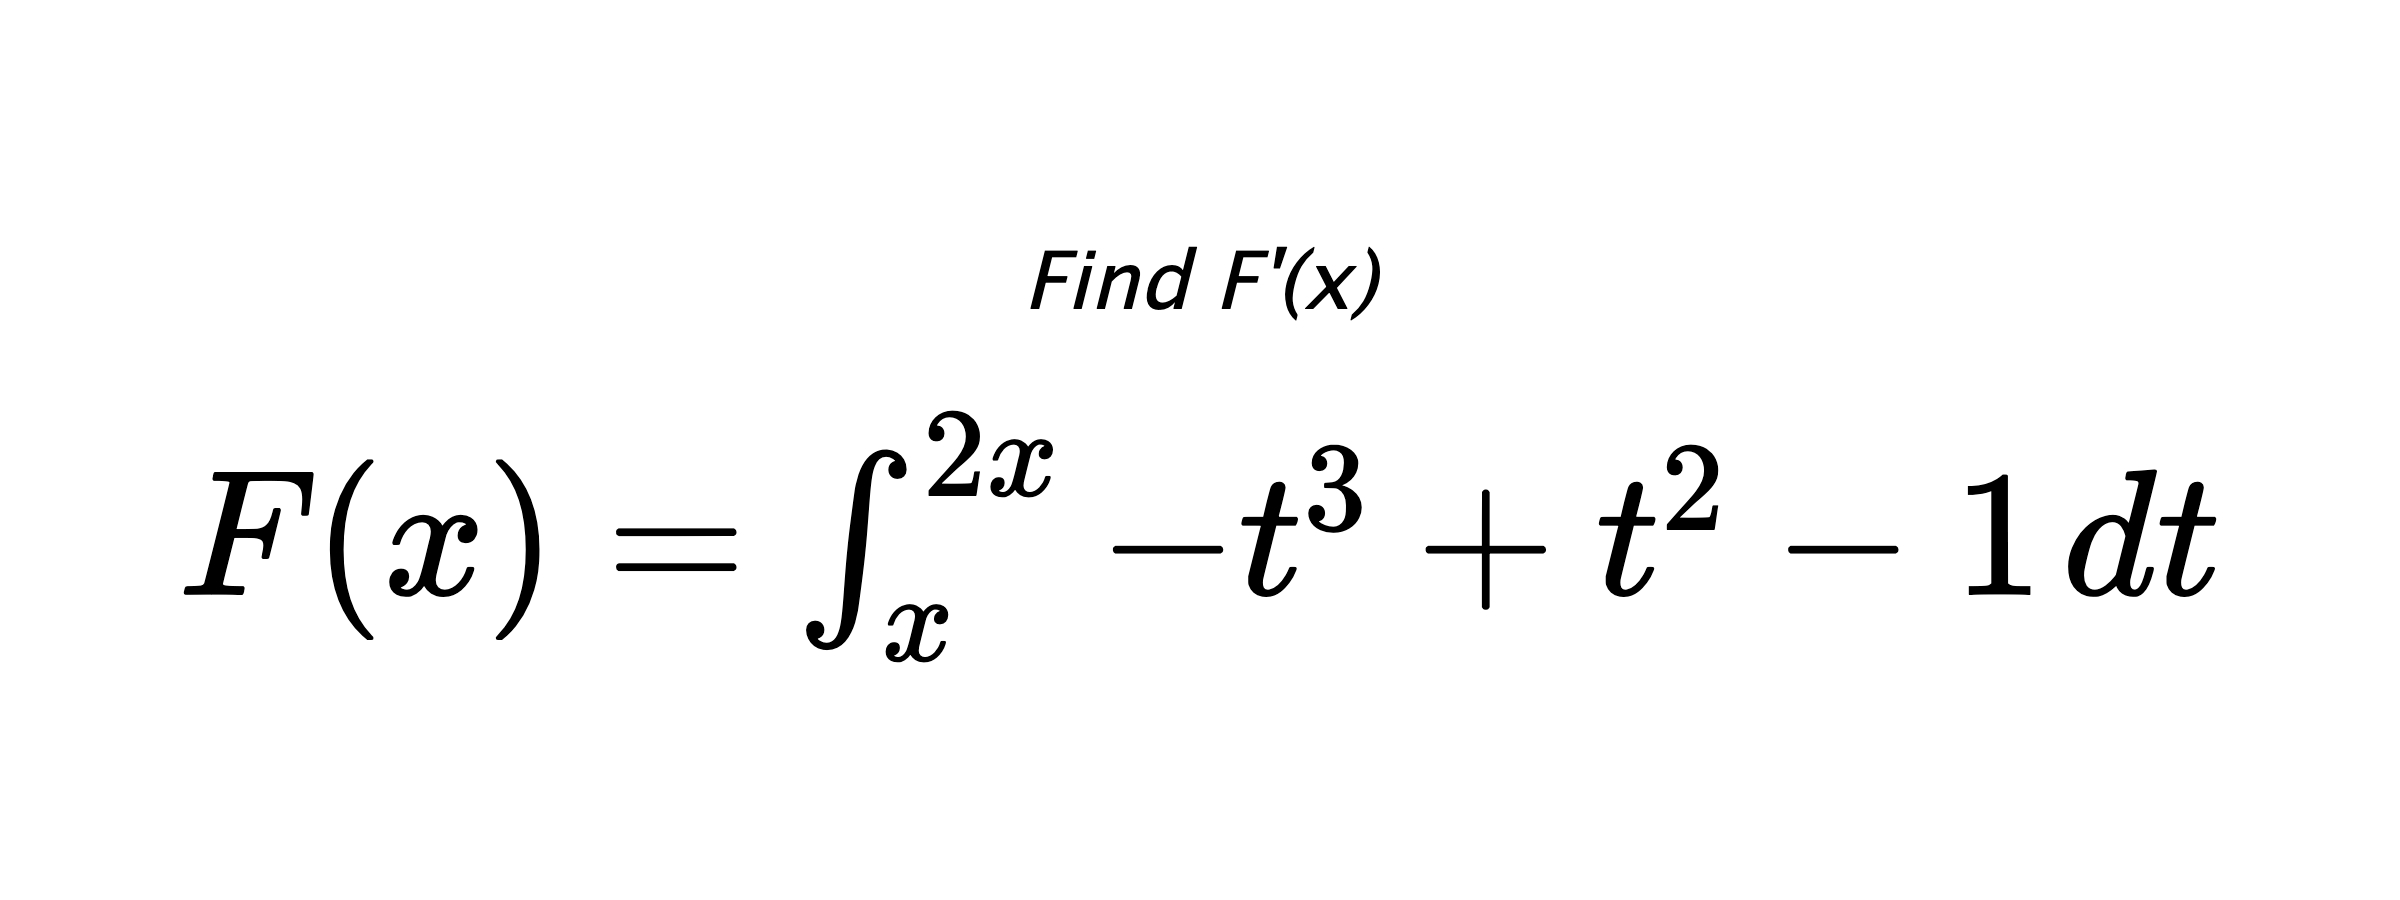 Find F'(x) $ F(x)=\int_{x}^{2x} -t^{3}+t^{2}-1 \hspace{0.2cm} dt $